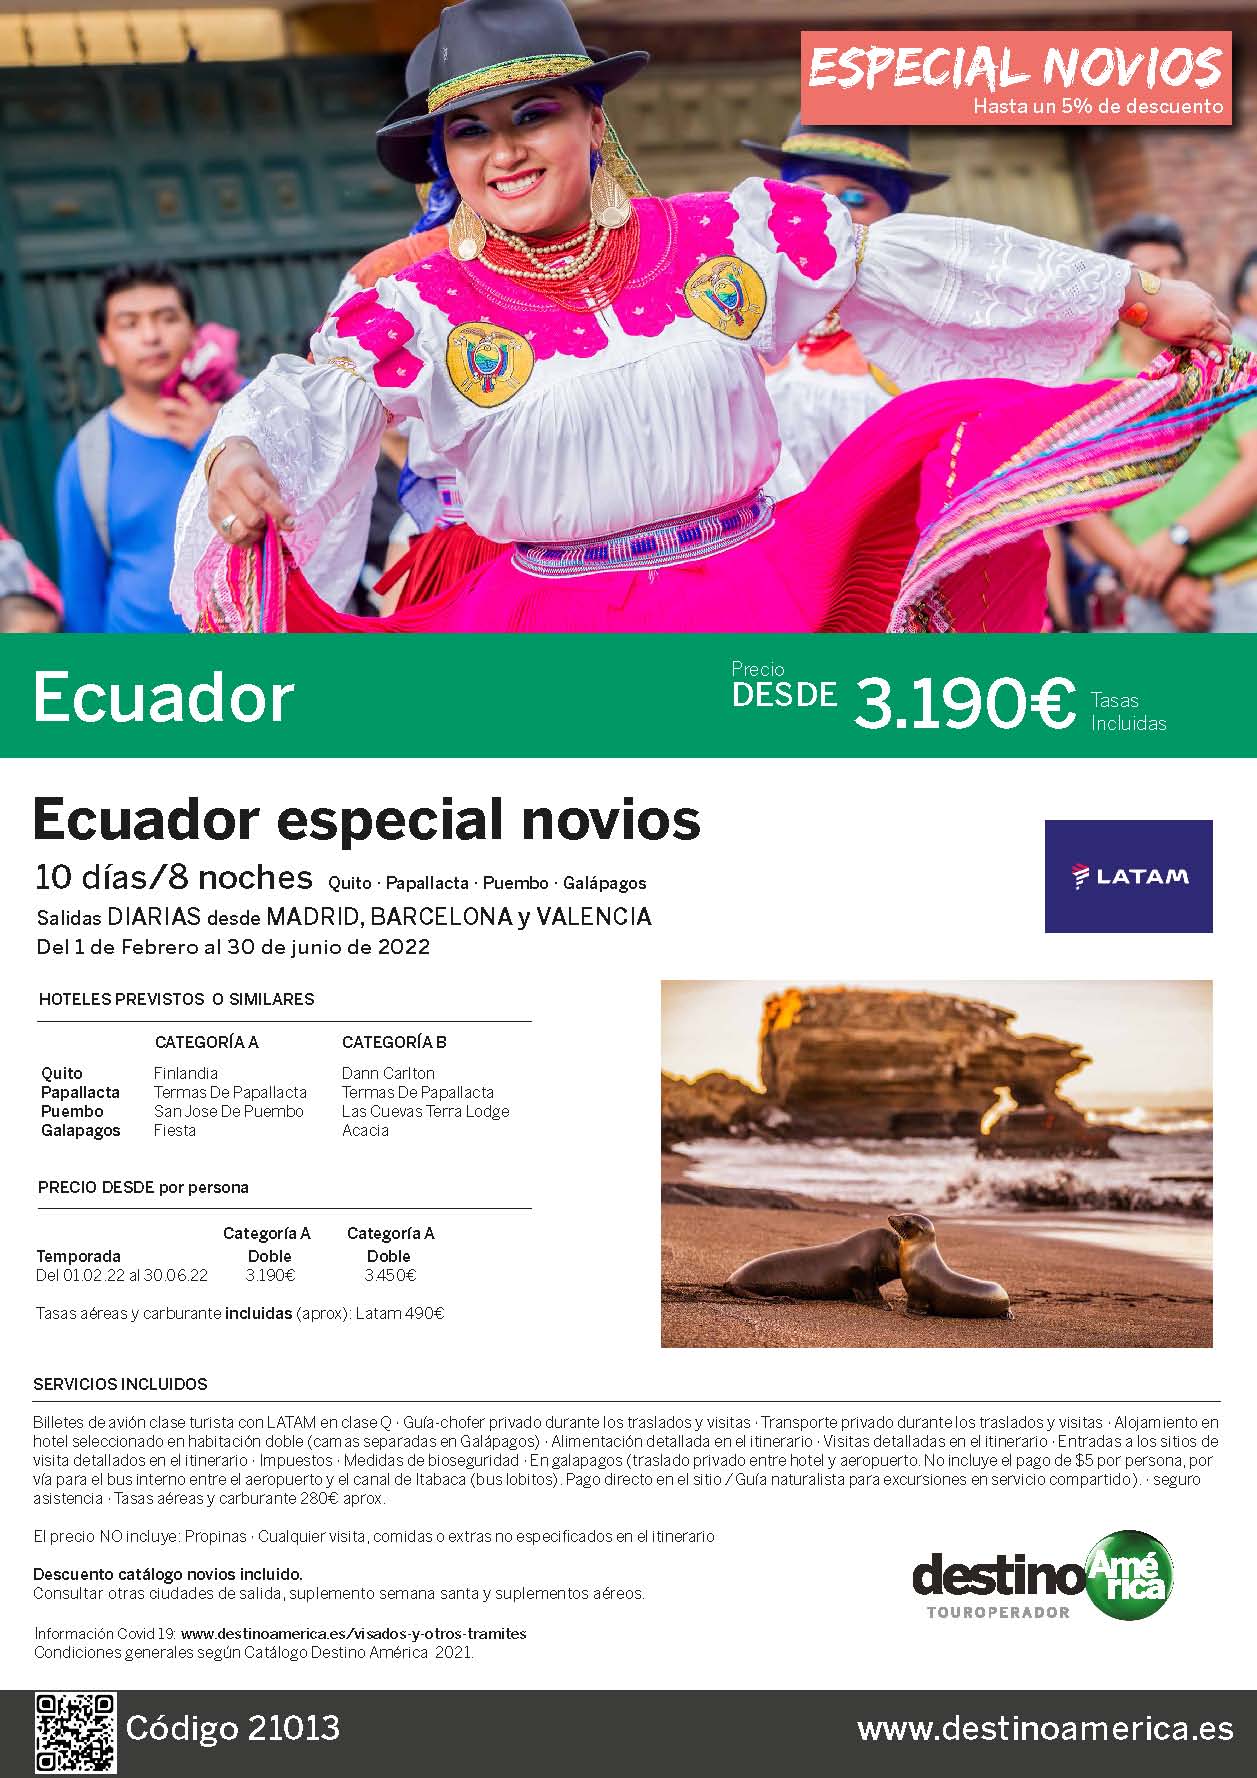 Oferta Destino America Novios Ecuador con Galapagos Febrero a Junio 2022 salidas desde Madrid Barcelona y Valencia